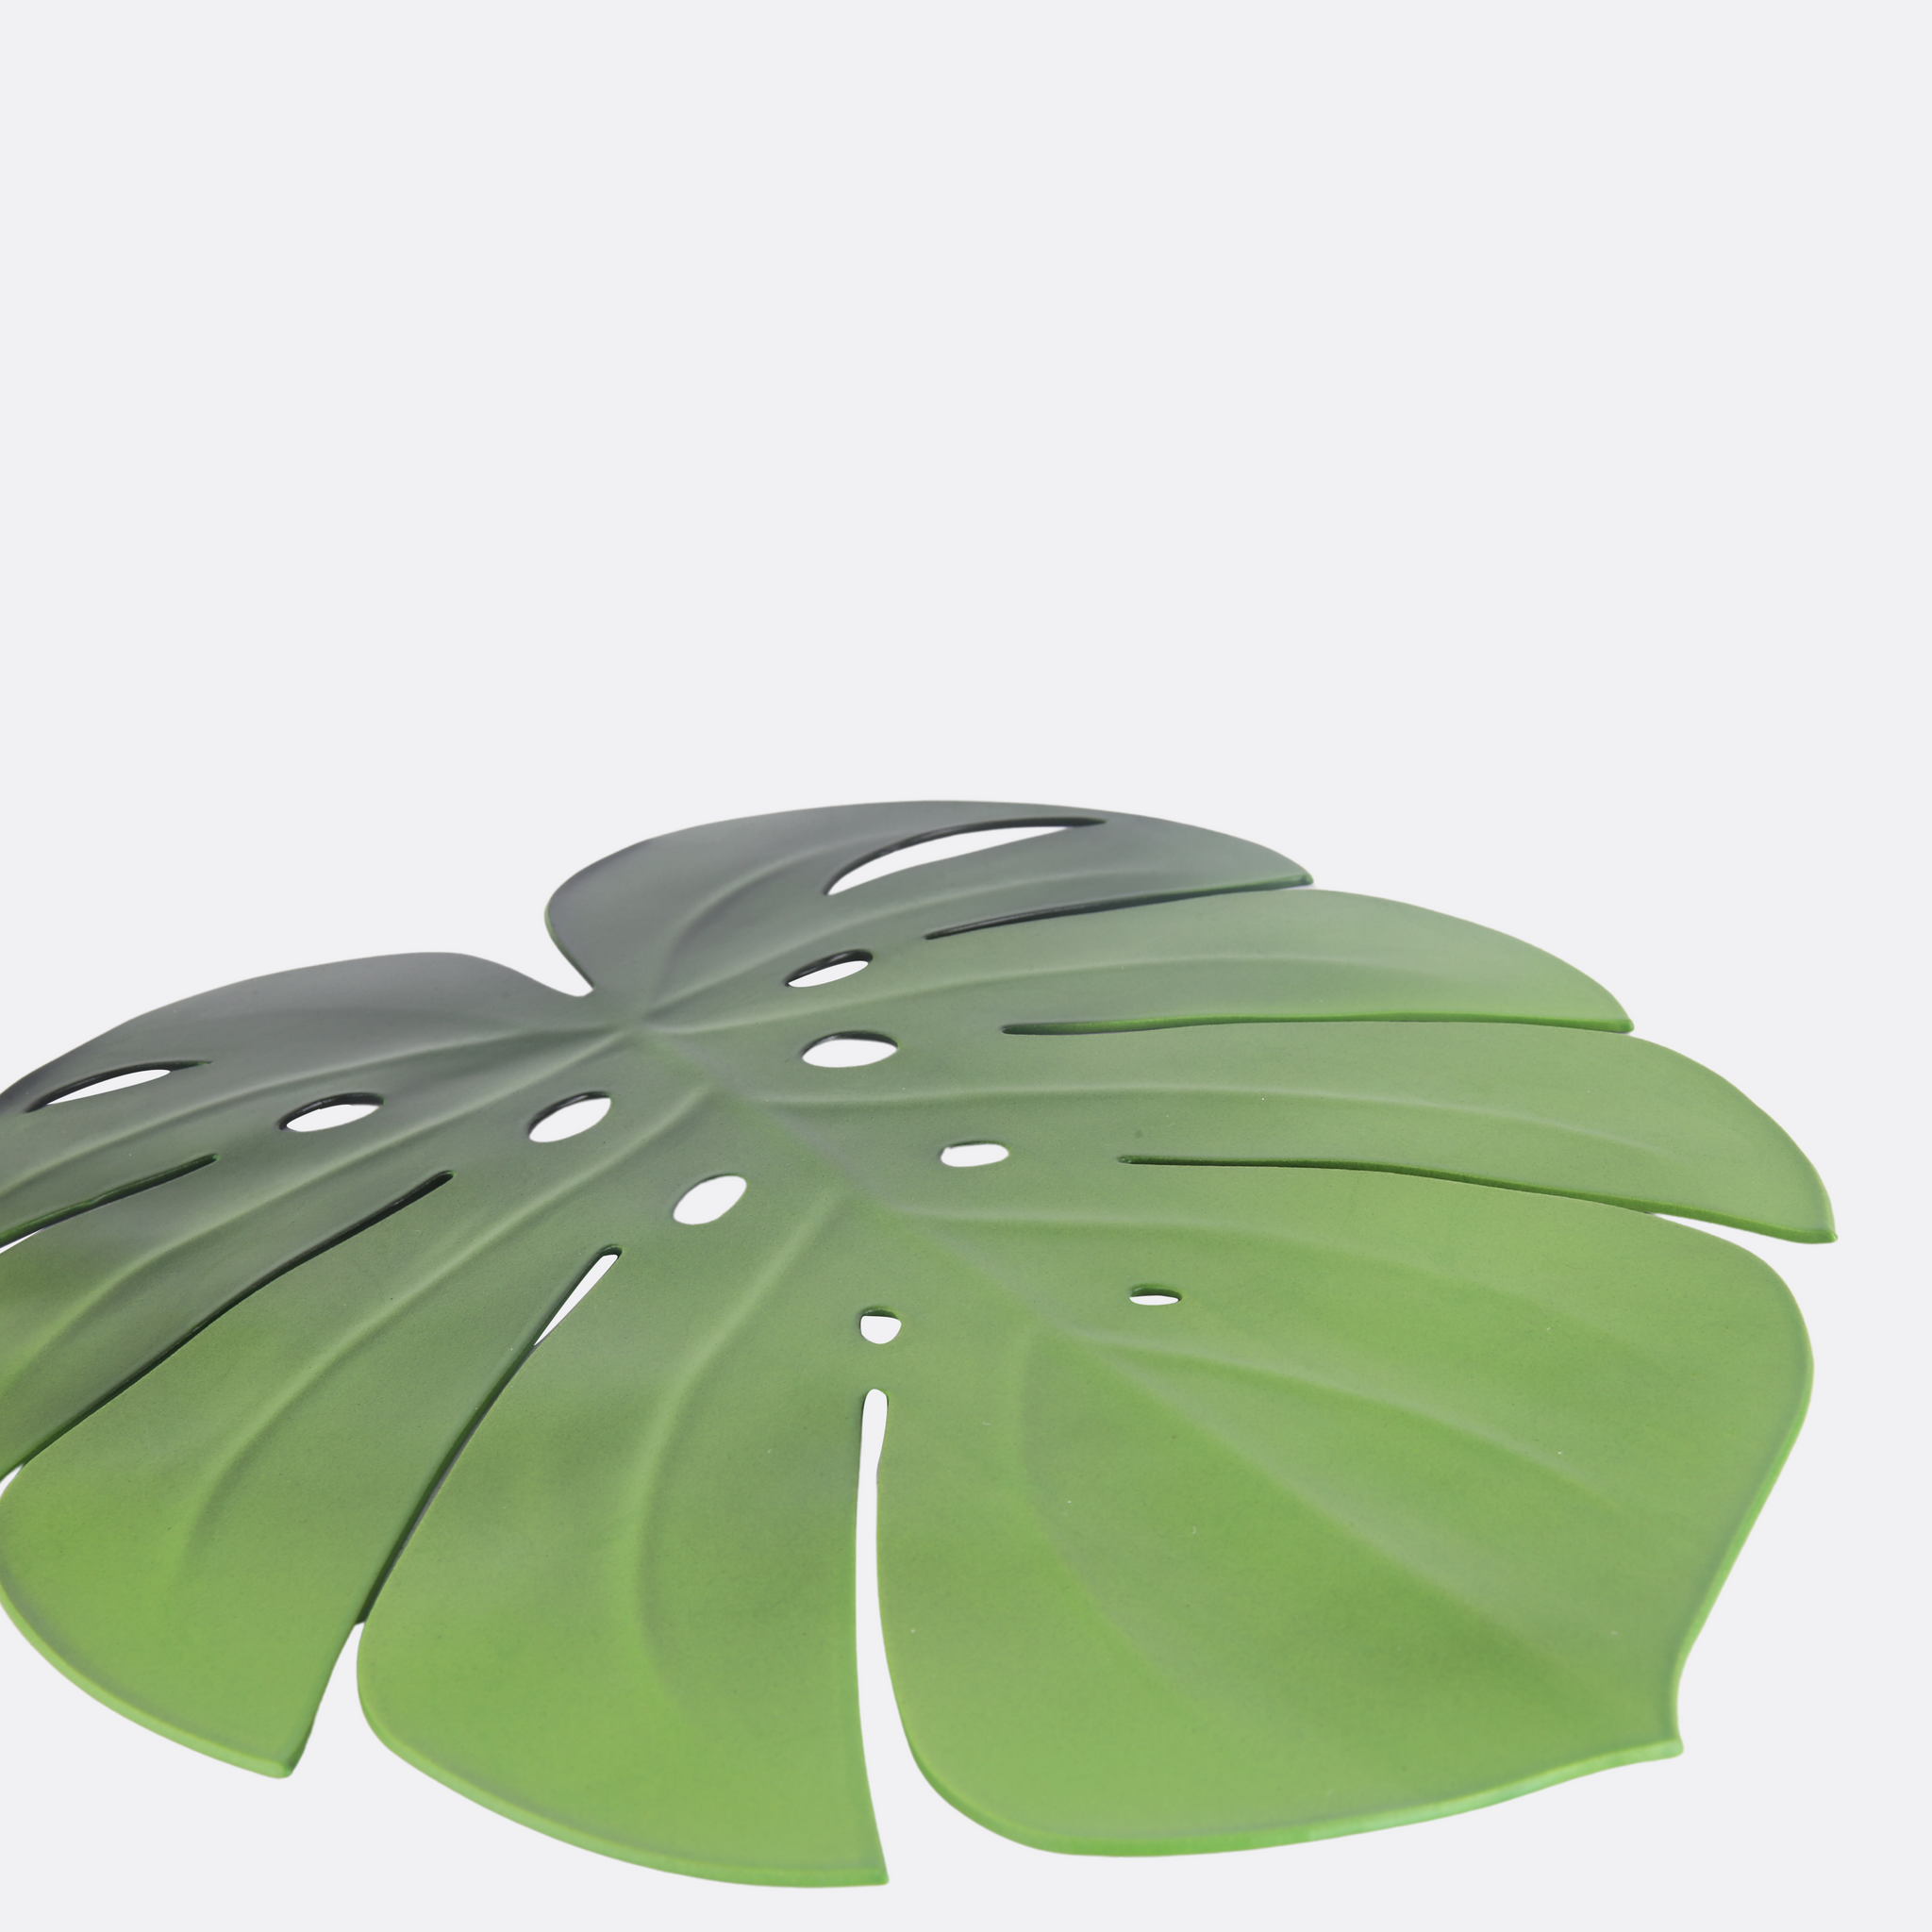 Palm Leaf Design place Mats (Set Of 2)